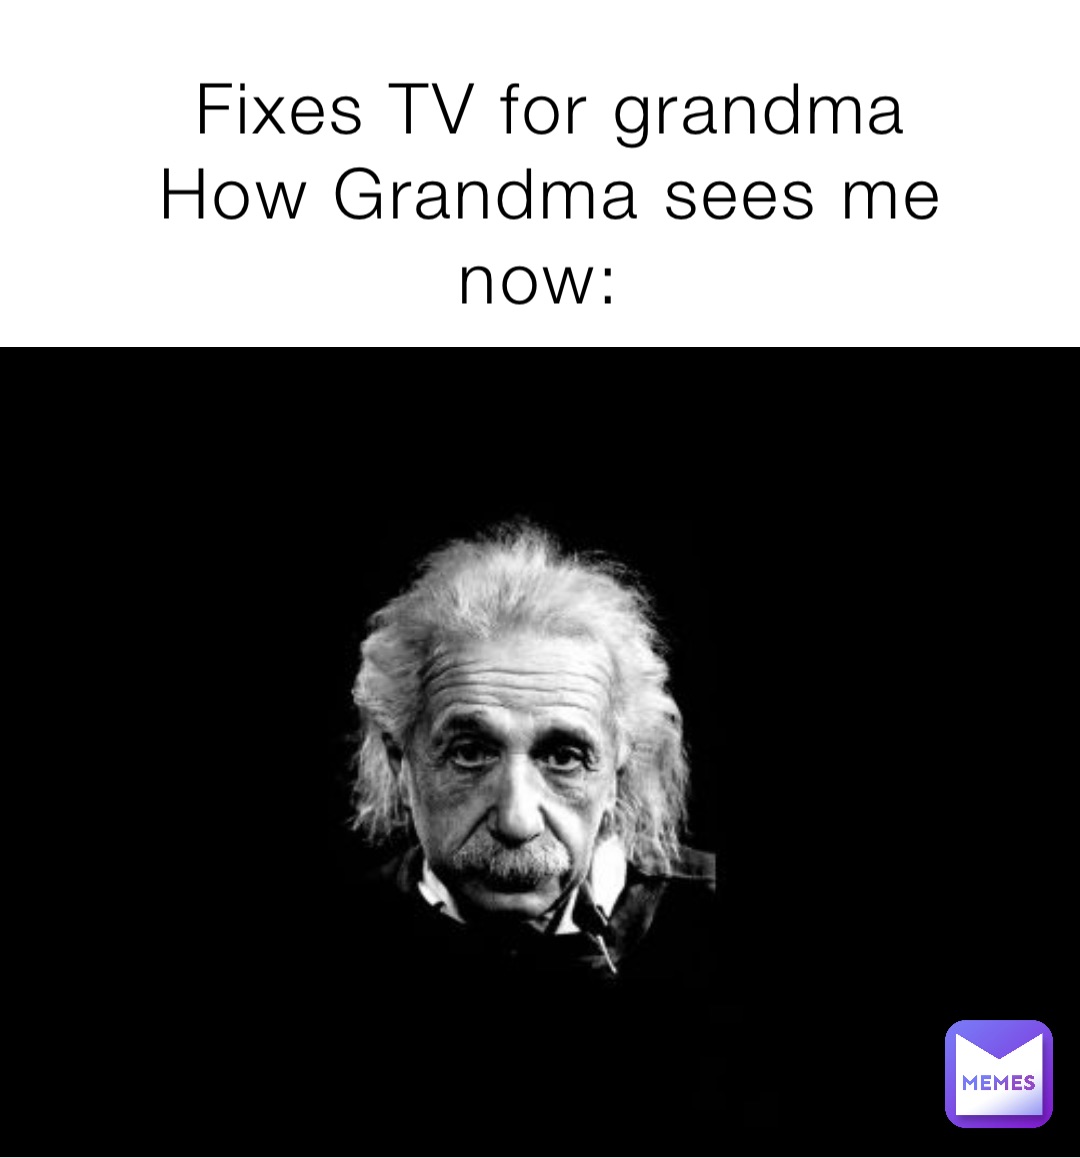 Fixes TV for grandma 
How Grandma sees me now: